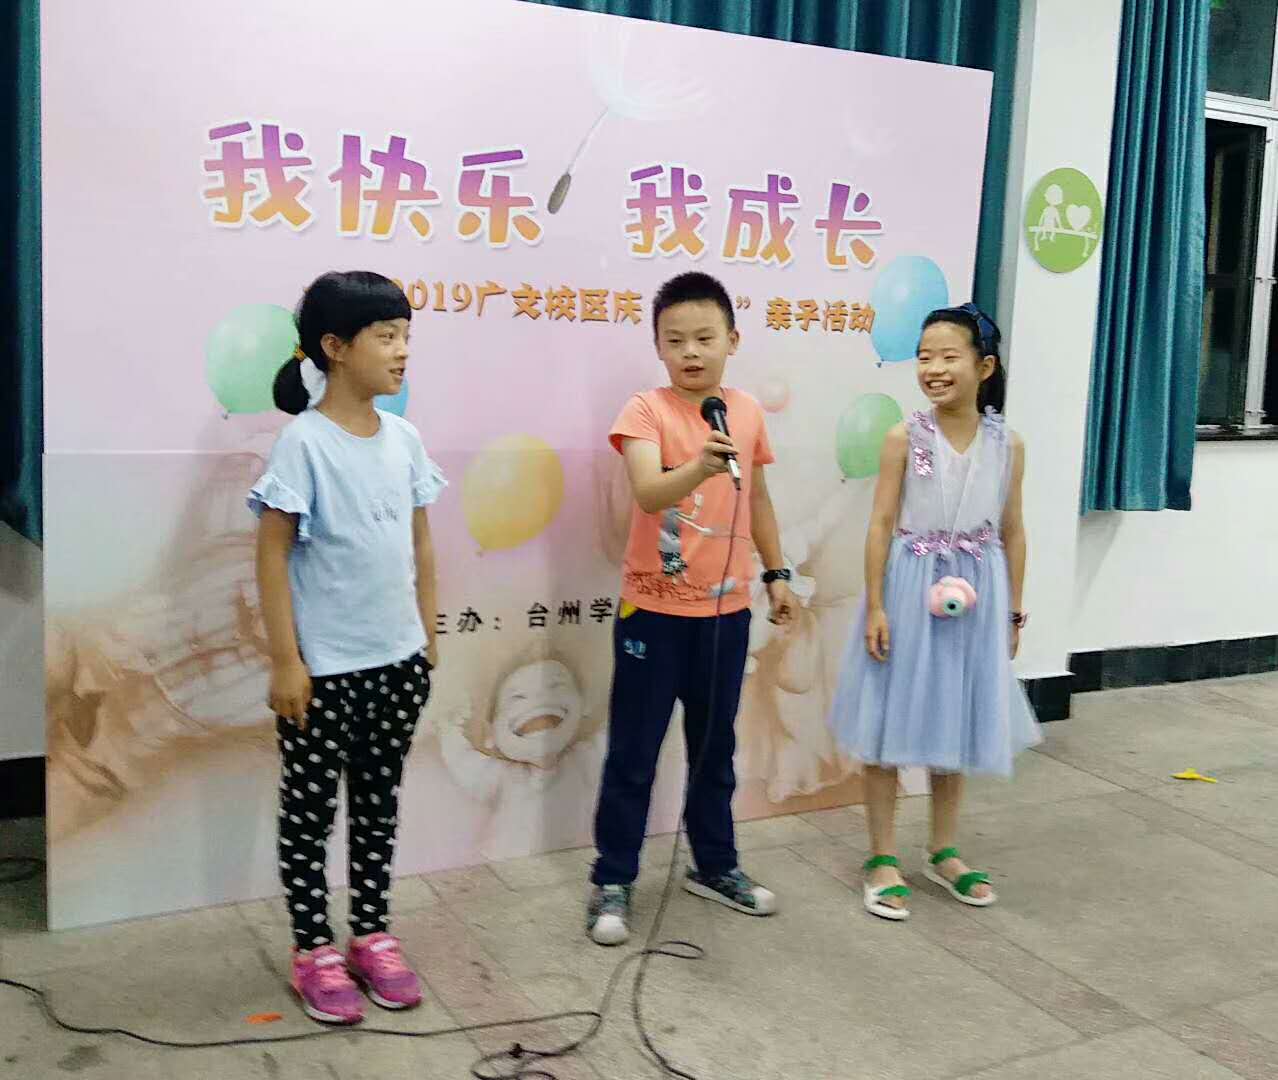 台州学院校工会举办“我快乐 我成长”青年教工亲子活动